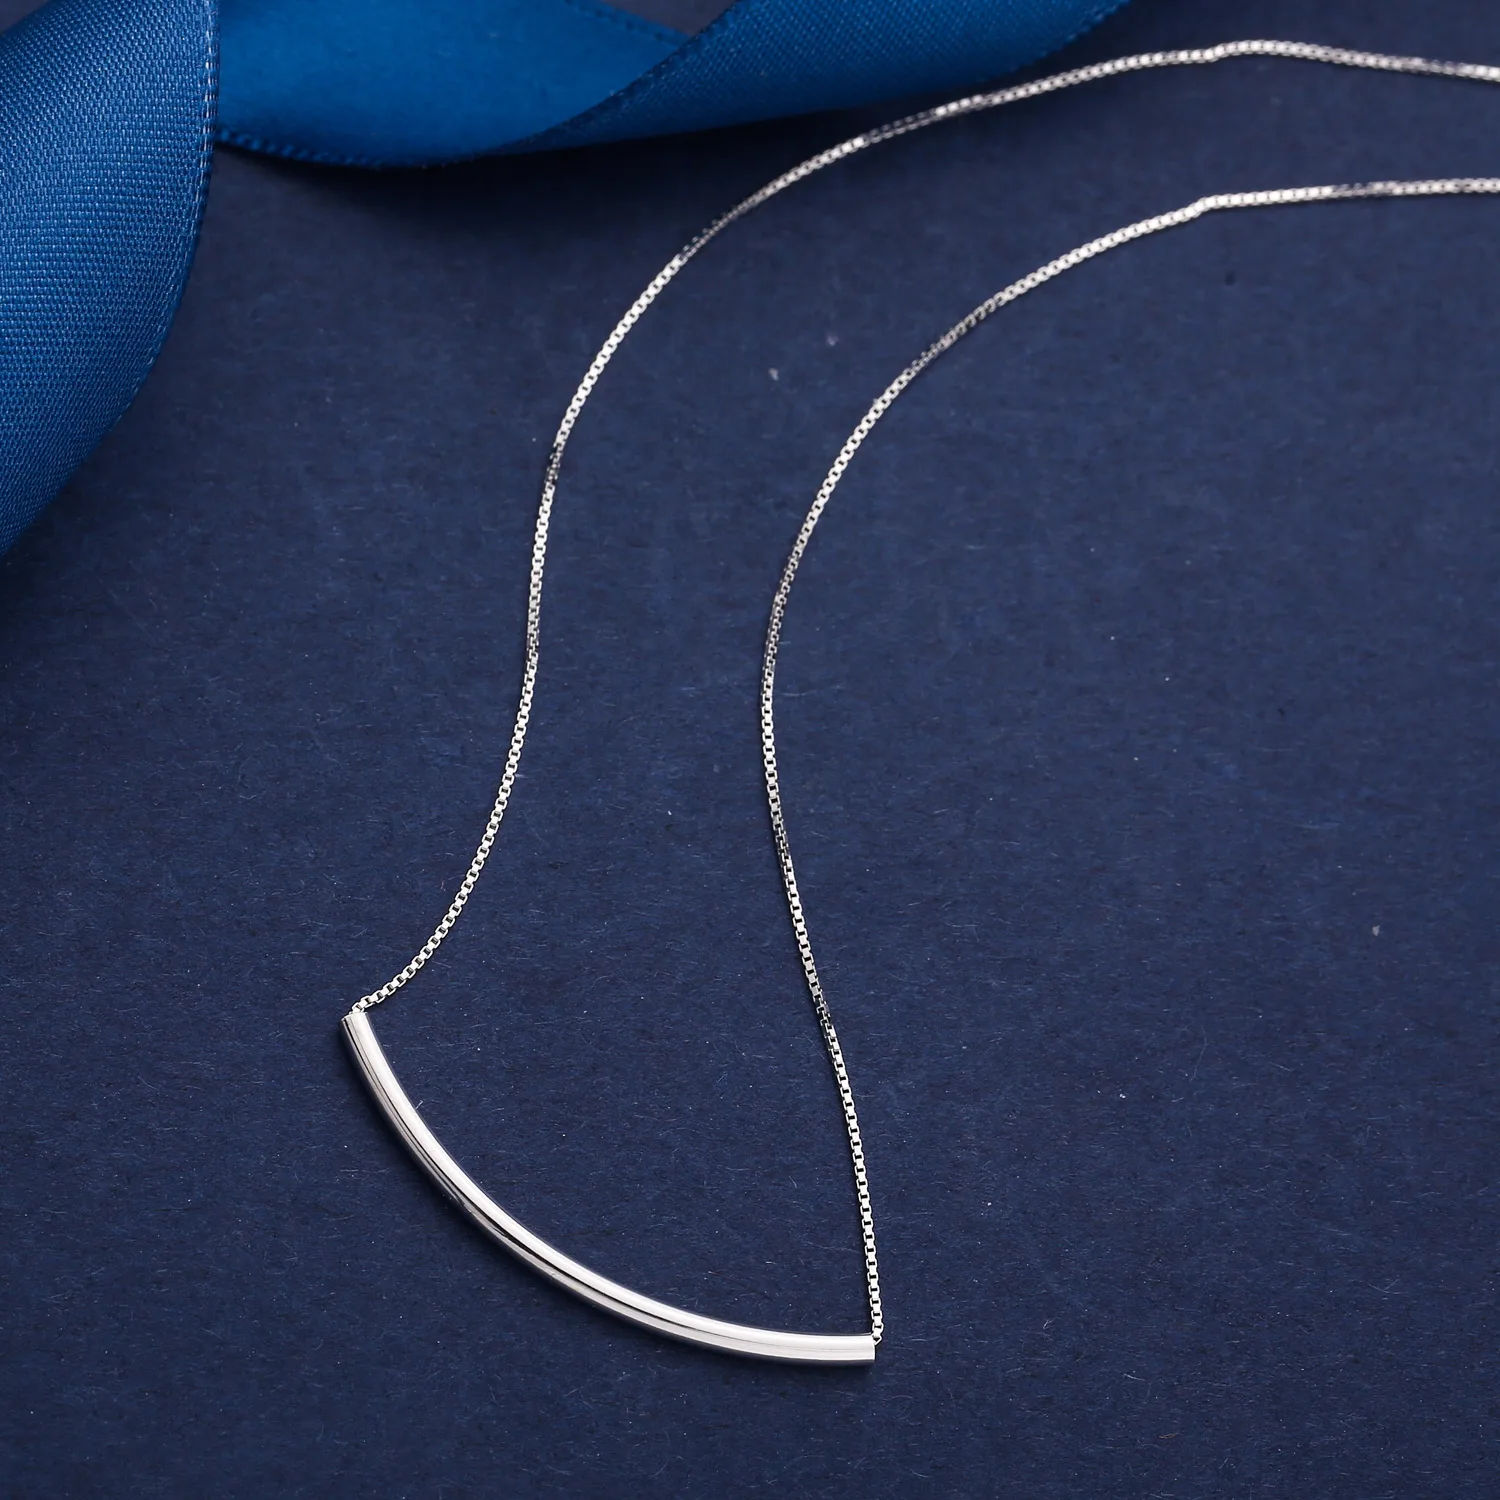 SA SILVERAGE Настоящее серебро 925 проба ожерелье с подвеской для женщин изогнутая труба серебряные ожерелья два типа Серебряное ожерелье 925